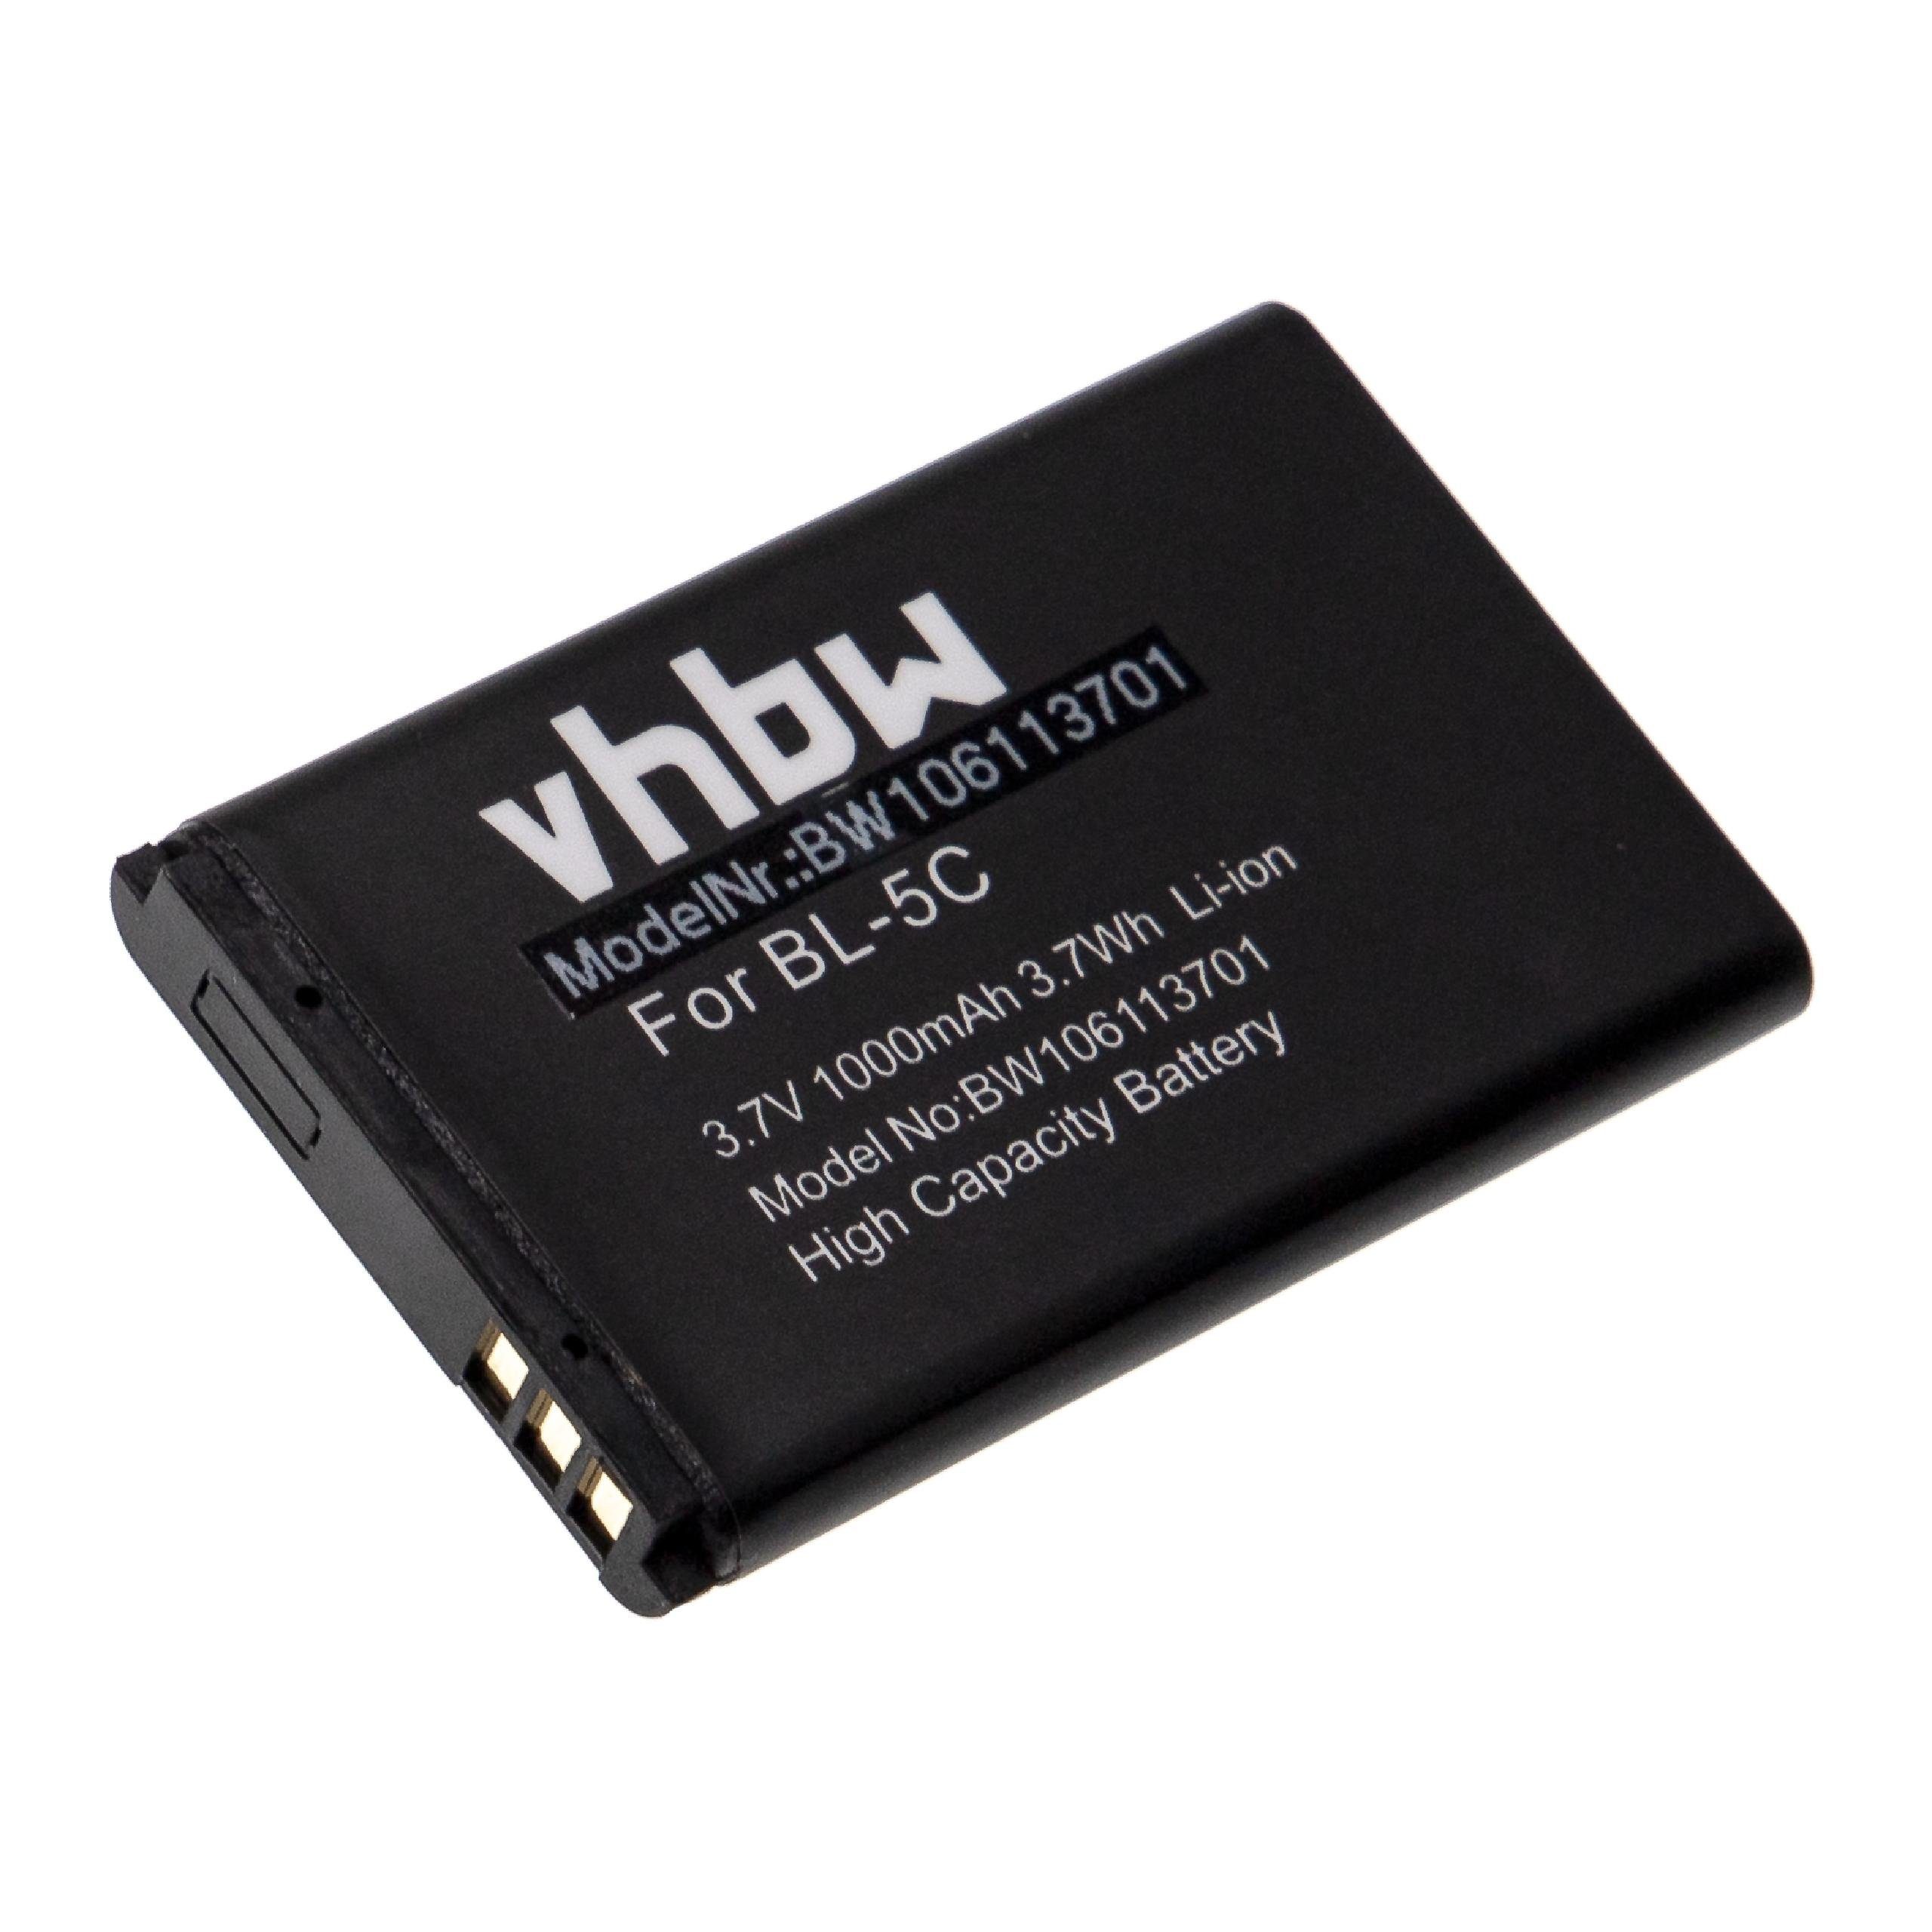 kompatibel vhbw mit (3,7 Smartphone-Akku Telefunken 1000 mAh Li-Ion FHD 170/5 V)